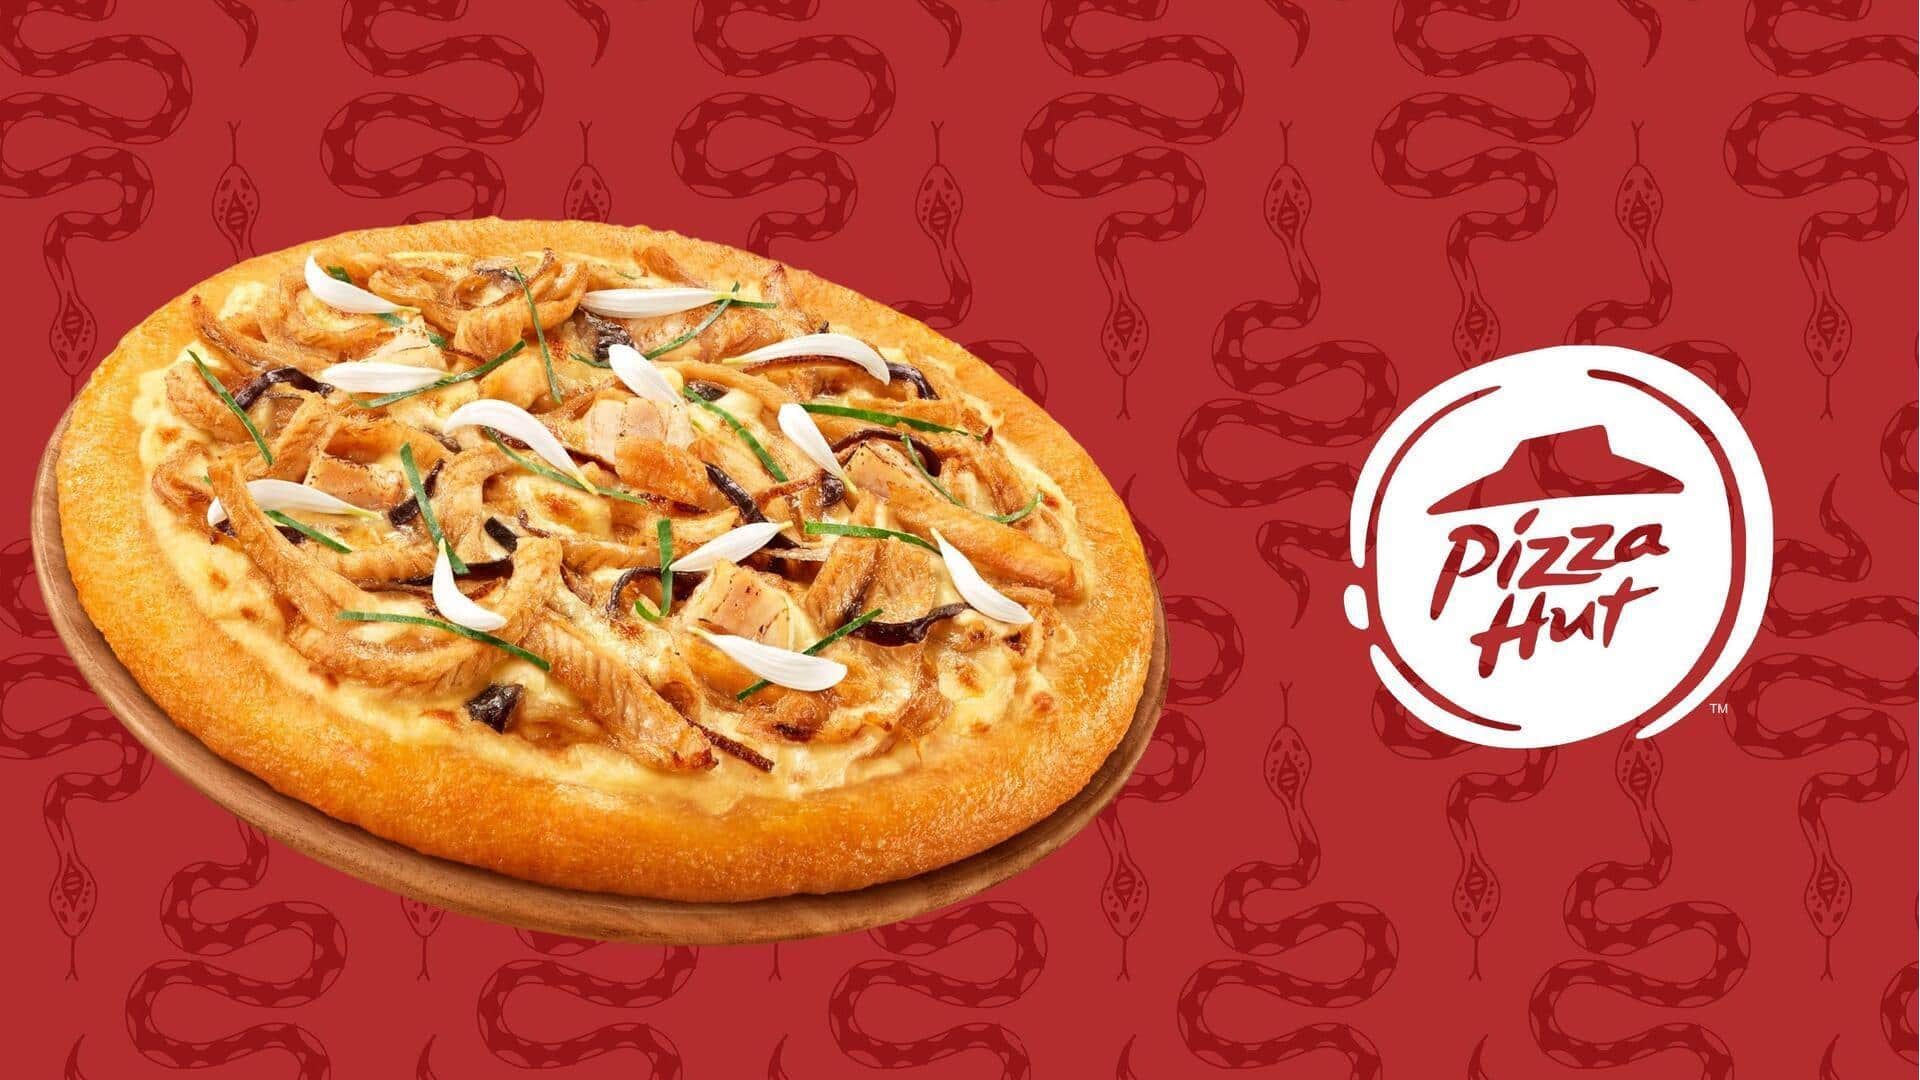 Hong Kong menawarkan pizza ular! Maukah Anda mencicipinya